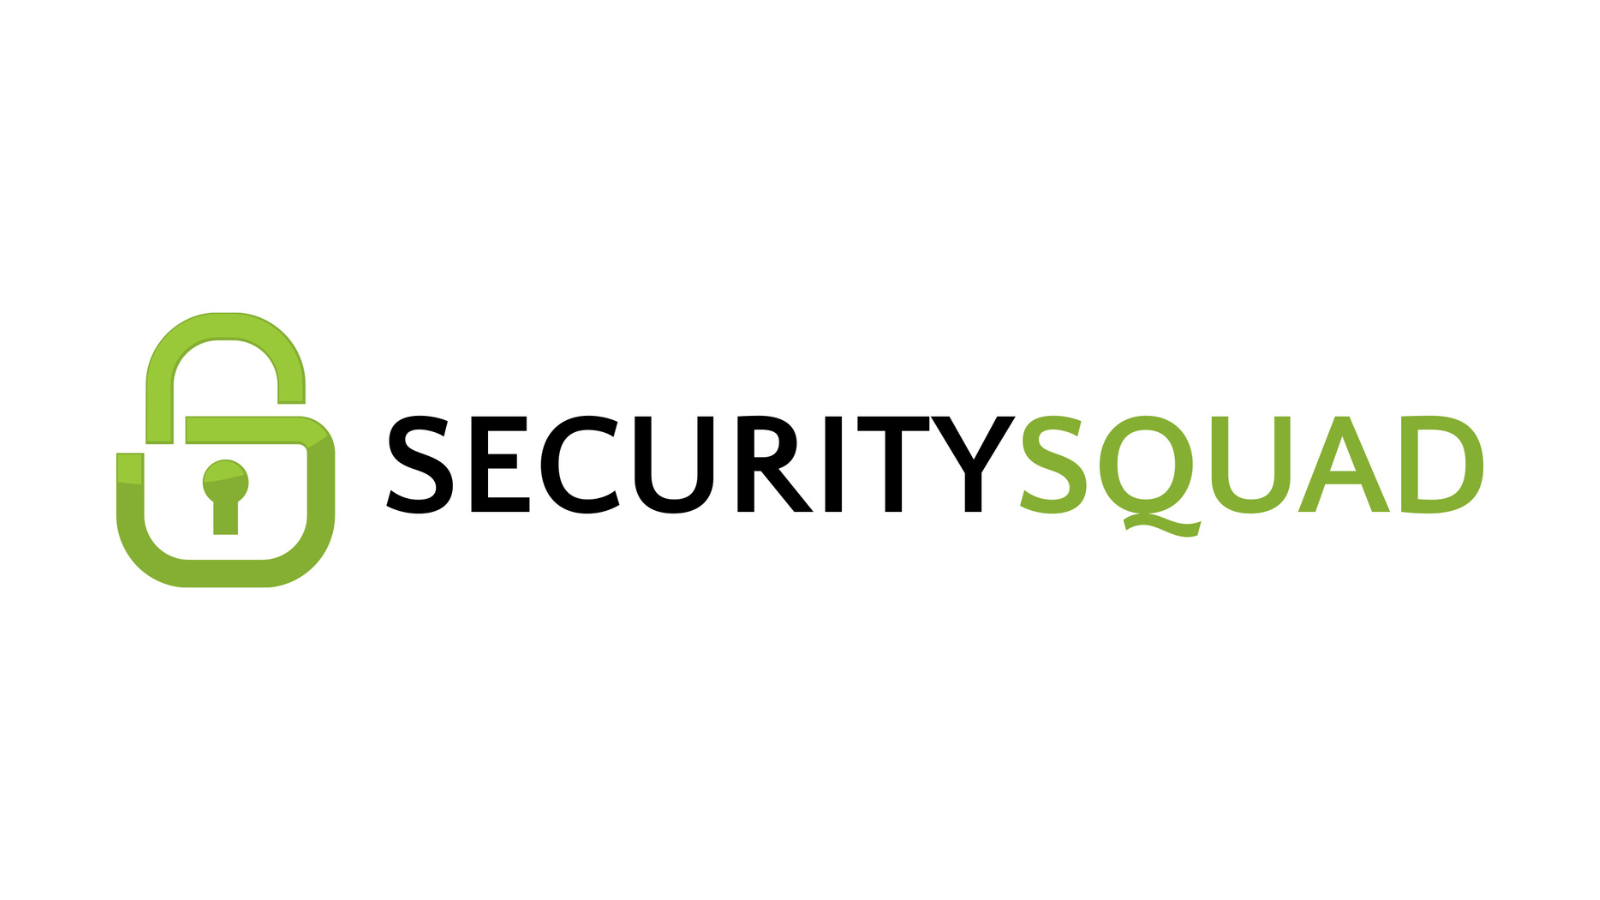 Securitysquad